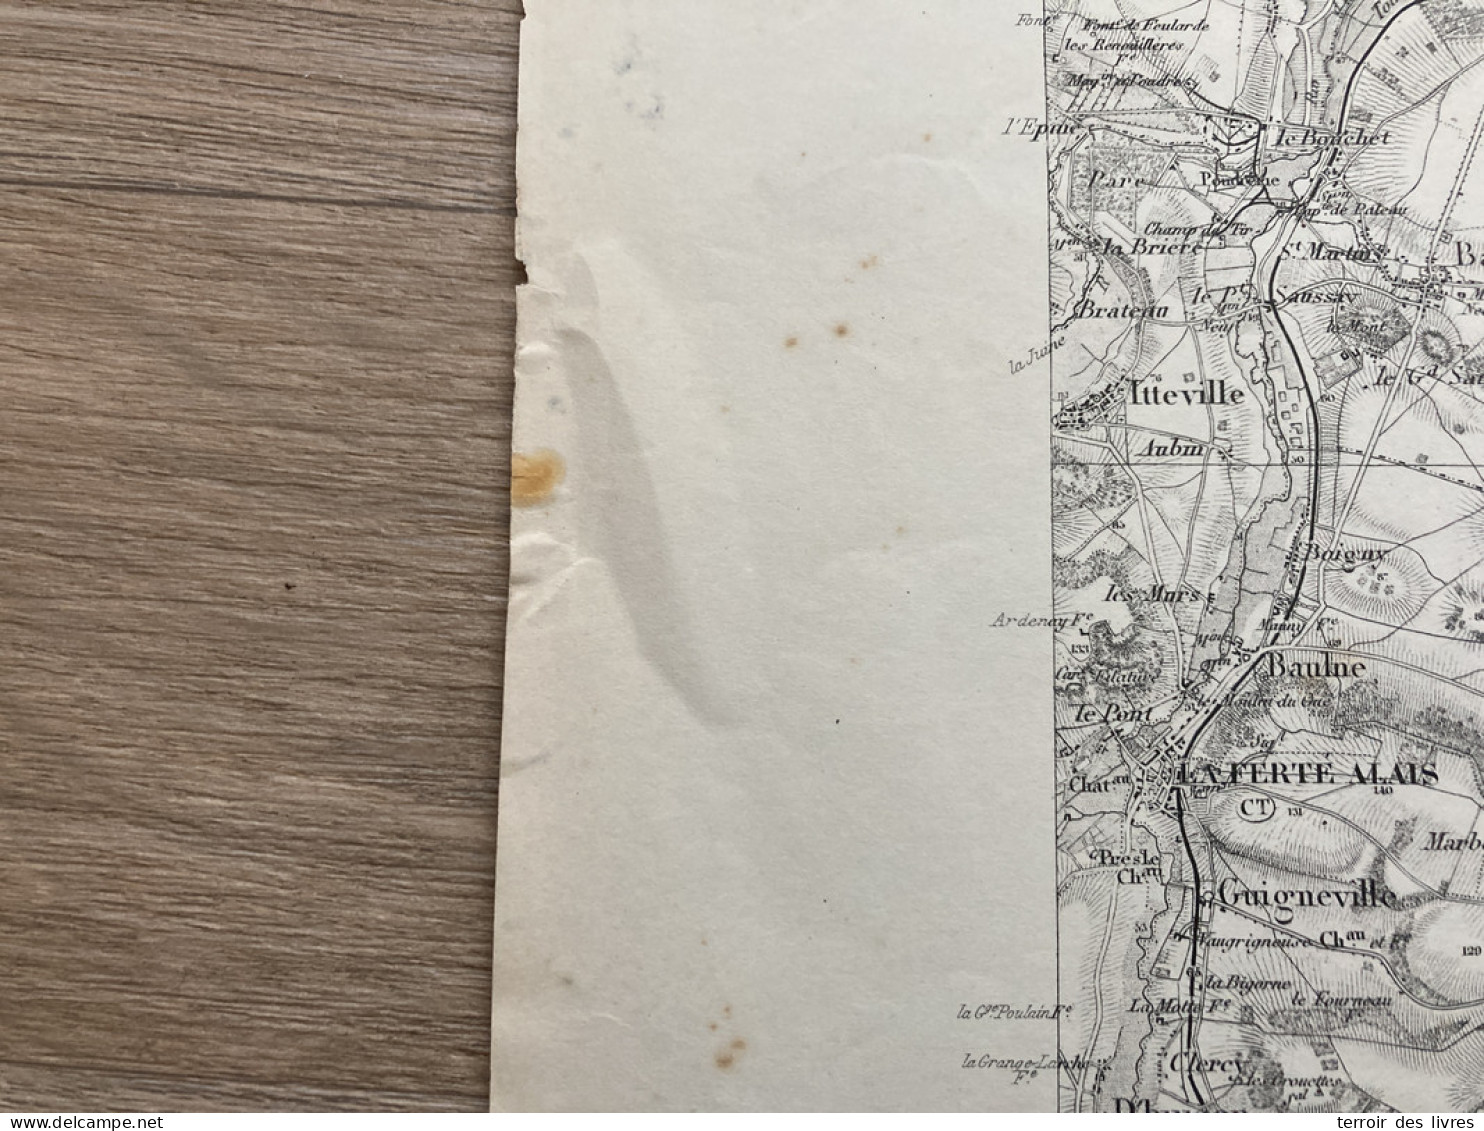 Carte état Major MELUN S.E. 1888 35x54cm PRINGY BOISSISE-LE-ROI PONTHIERRY BOISSISE-LA-BERTRAND BOISSETTES ST-SAUVEUR-SU - Landkarten